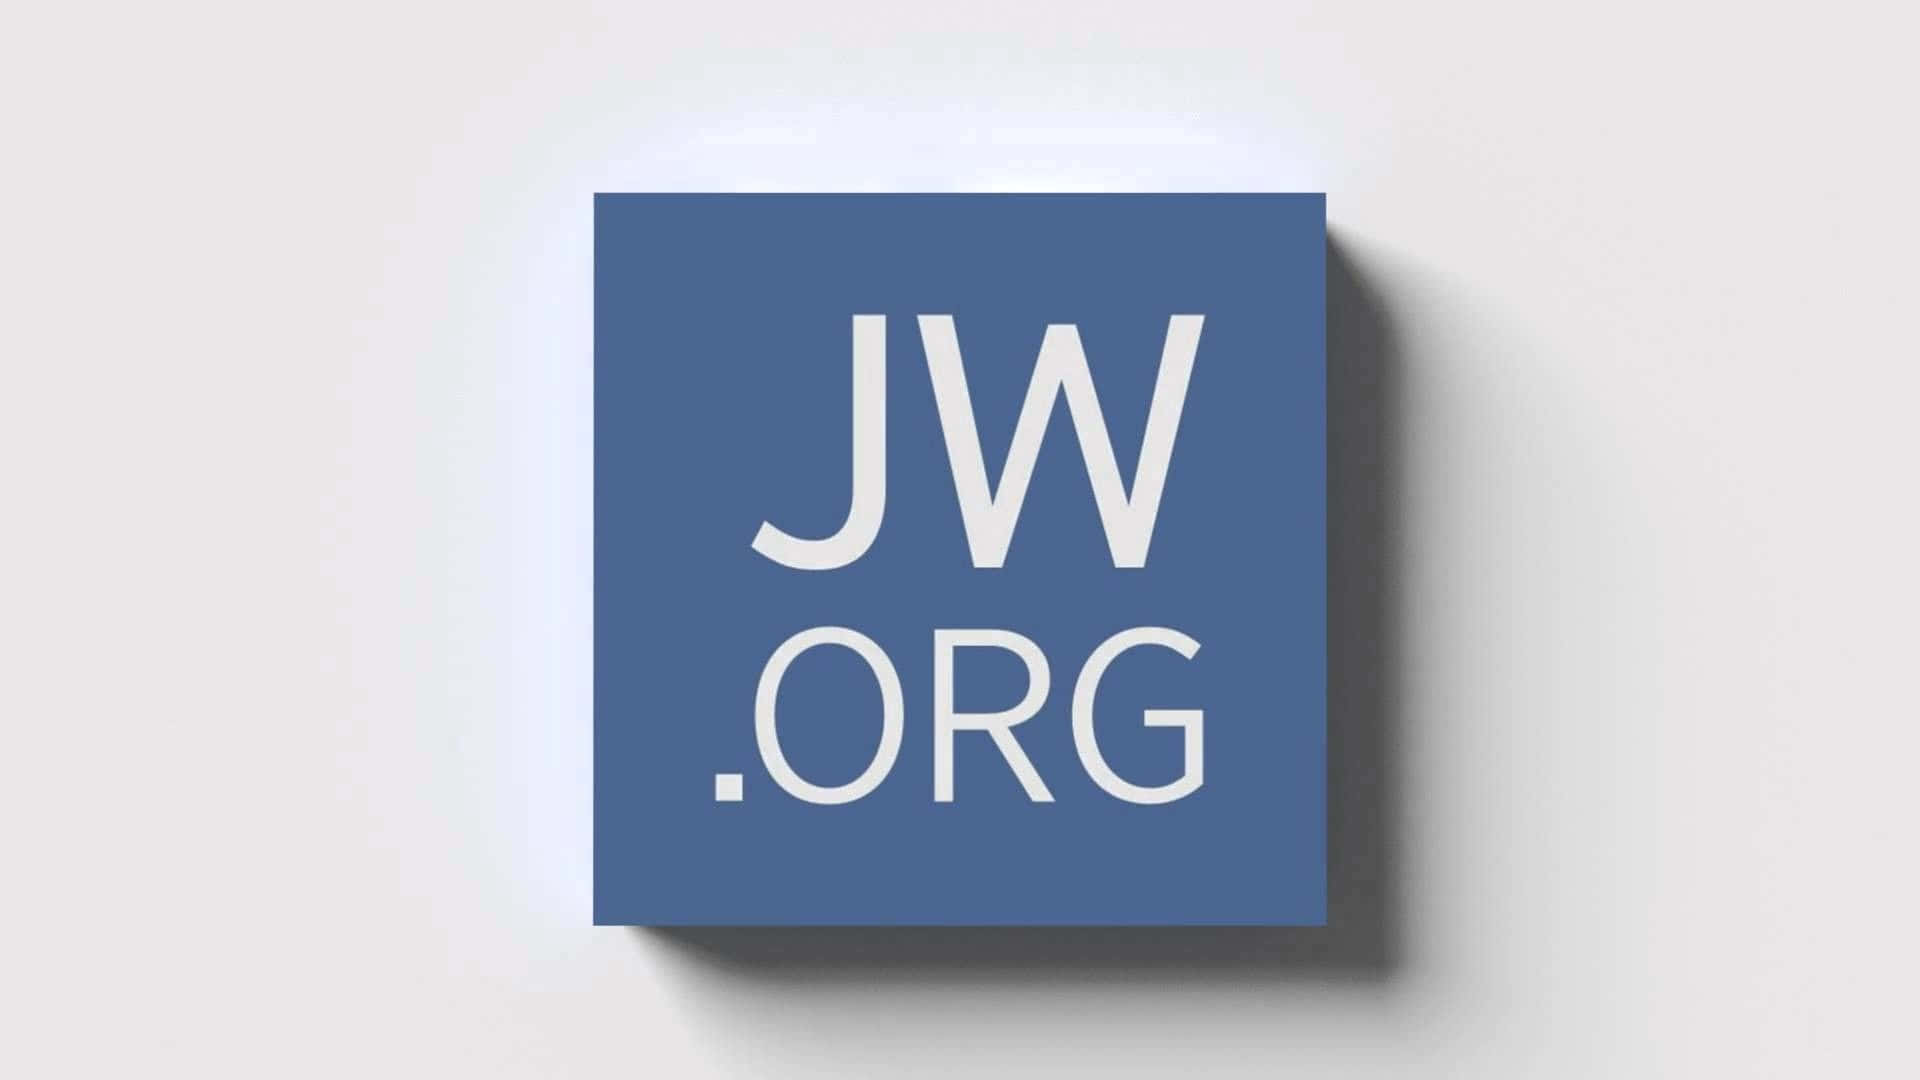 Logotipojworg Em Um Quadrado Azul. Papel de Parede